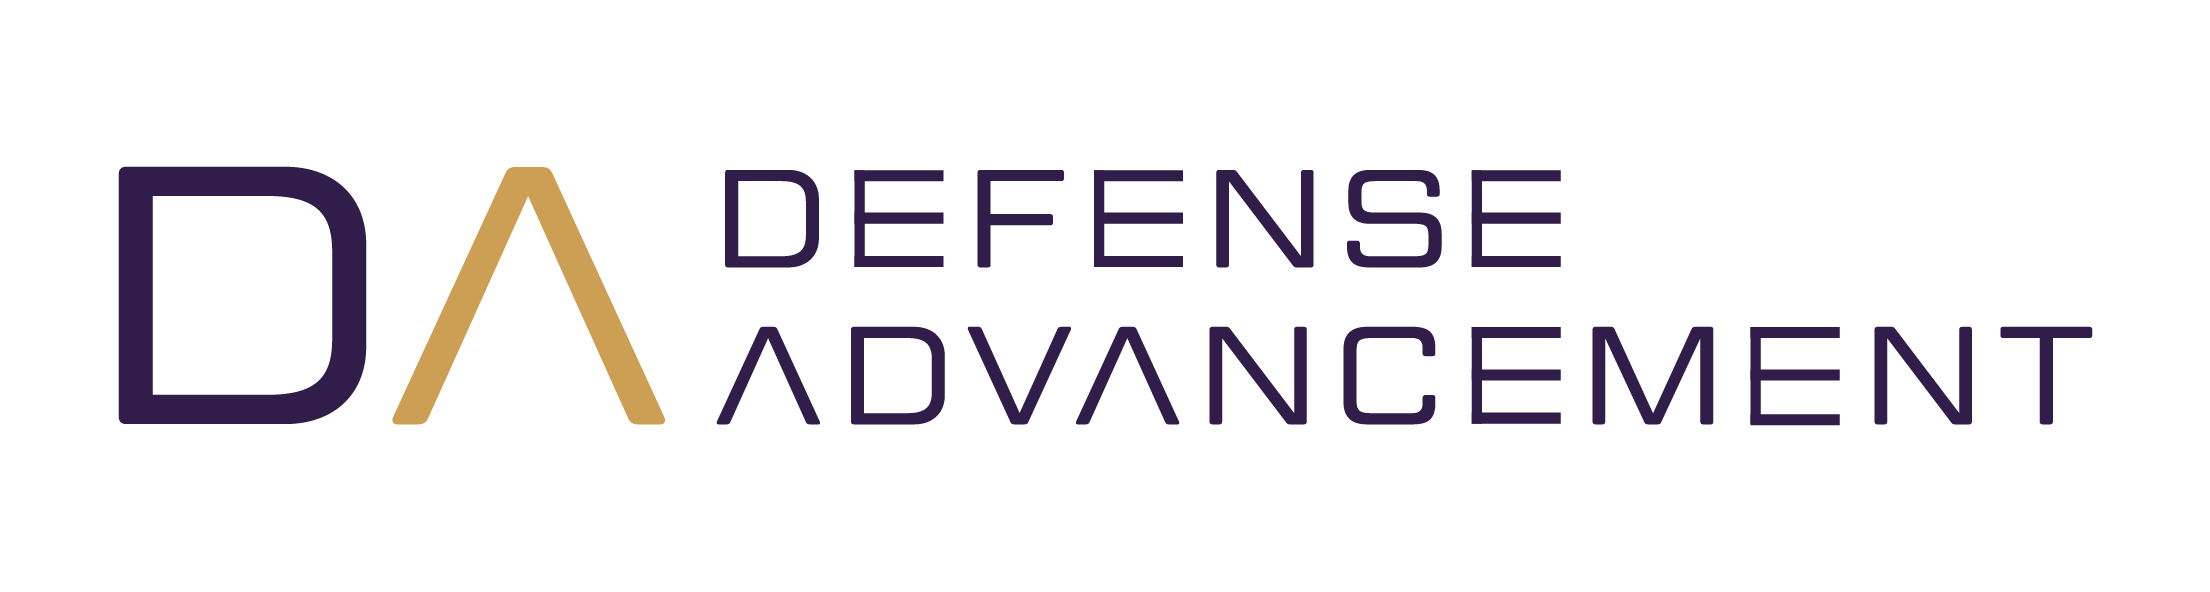 DA Defense Advancement 